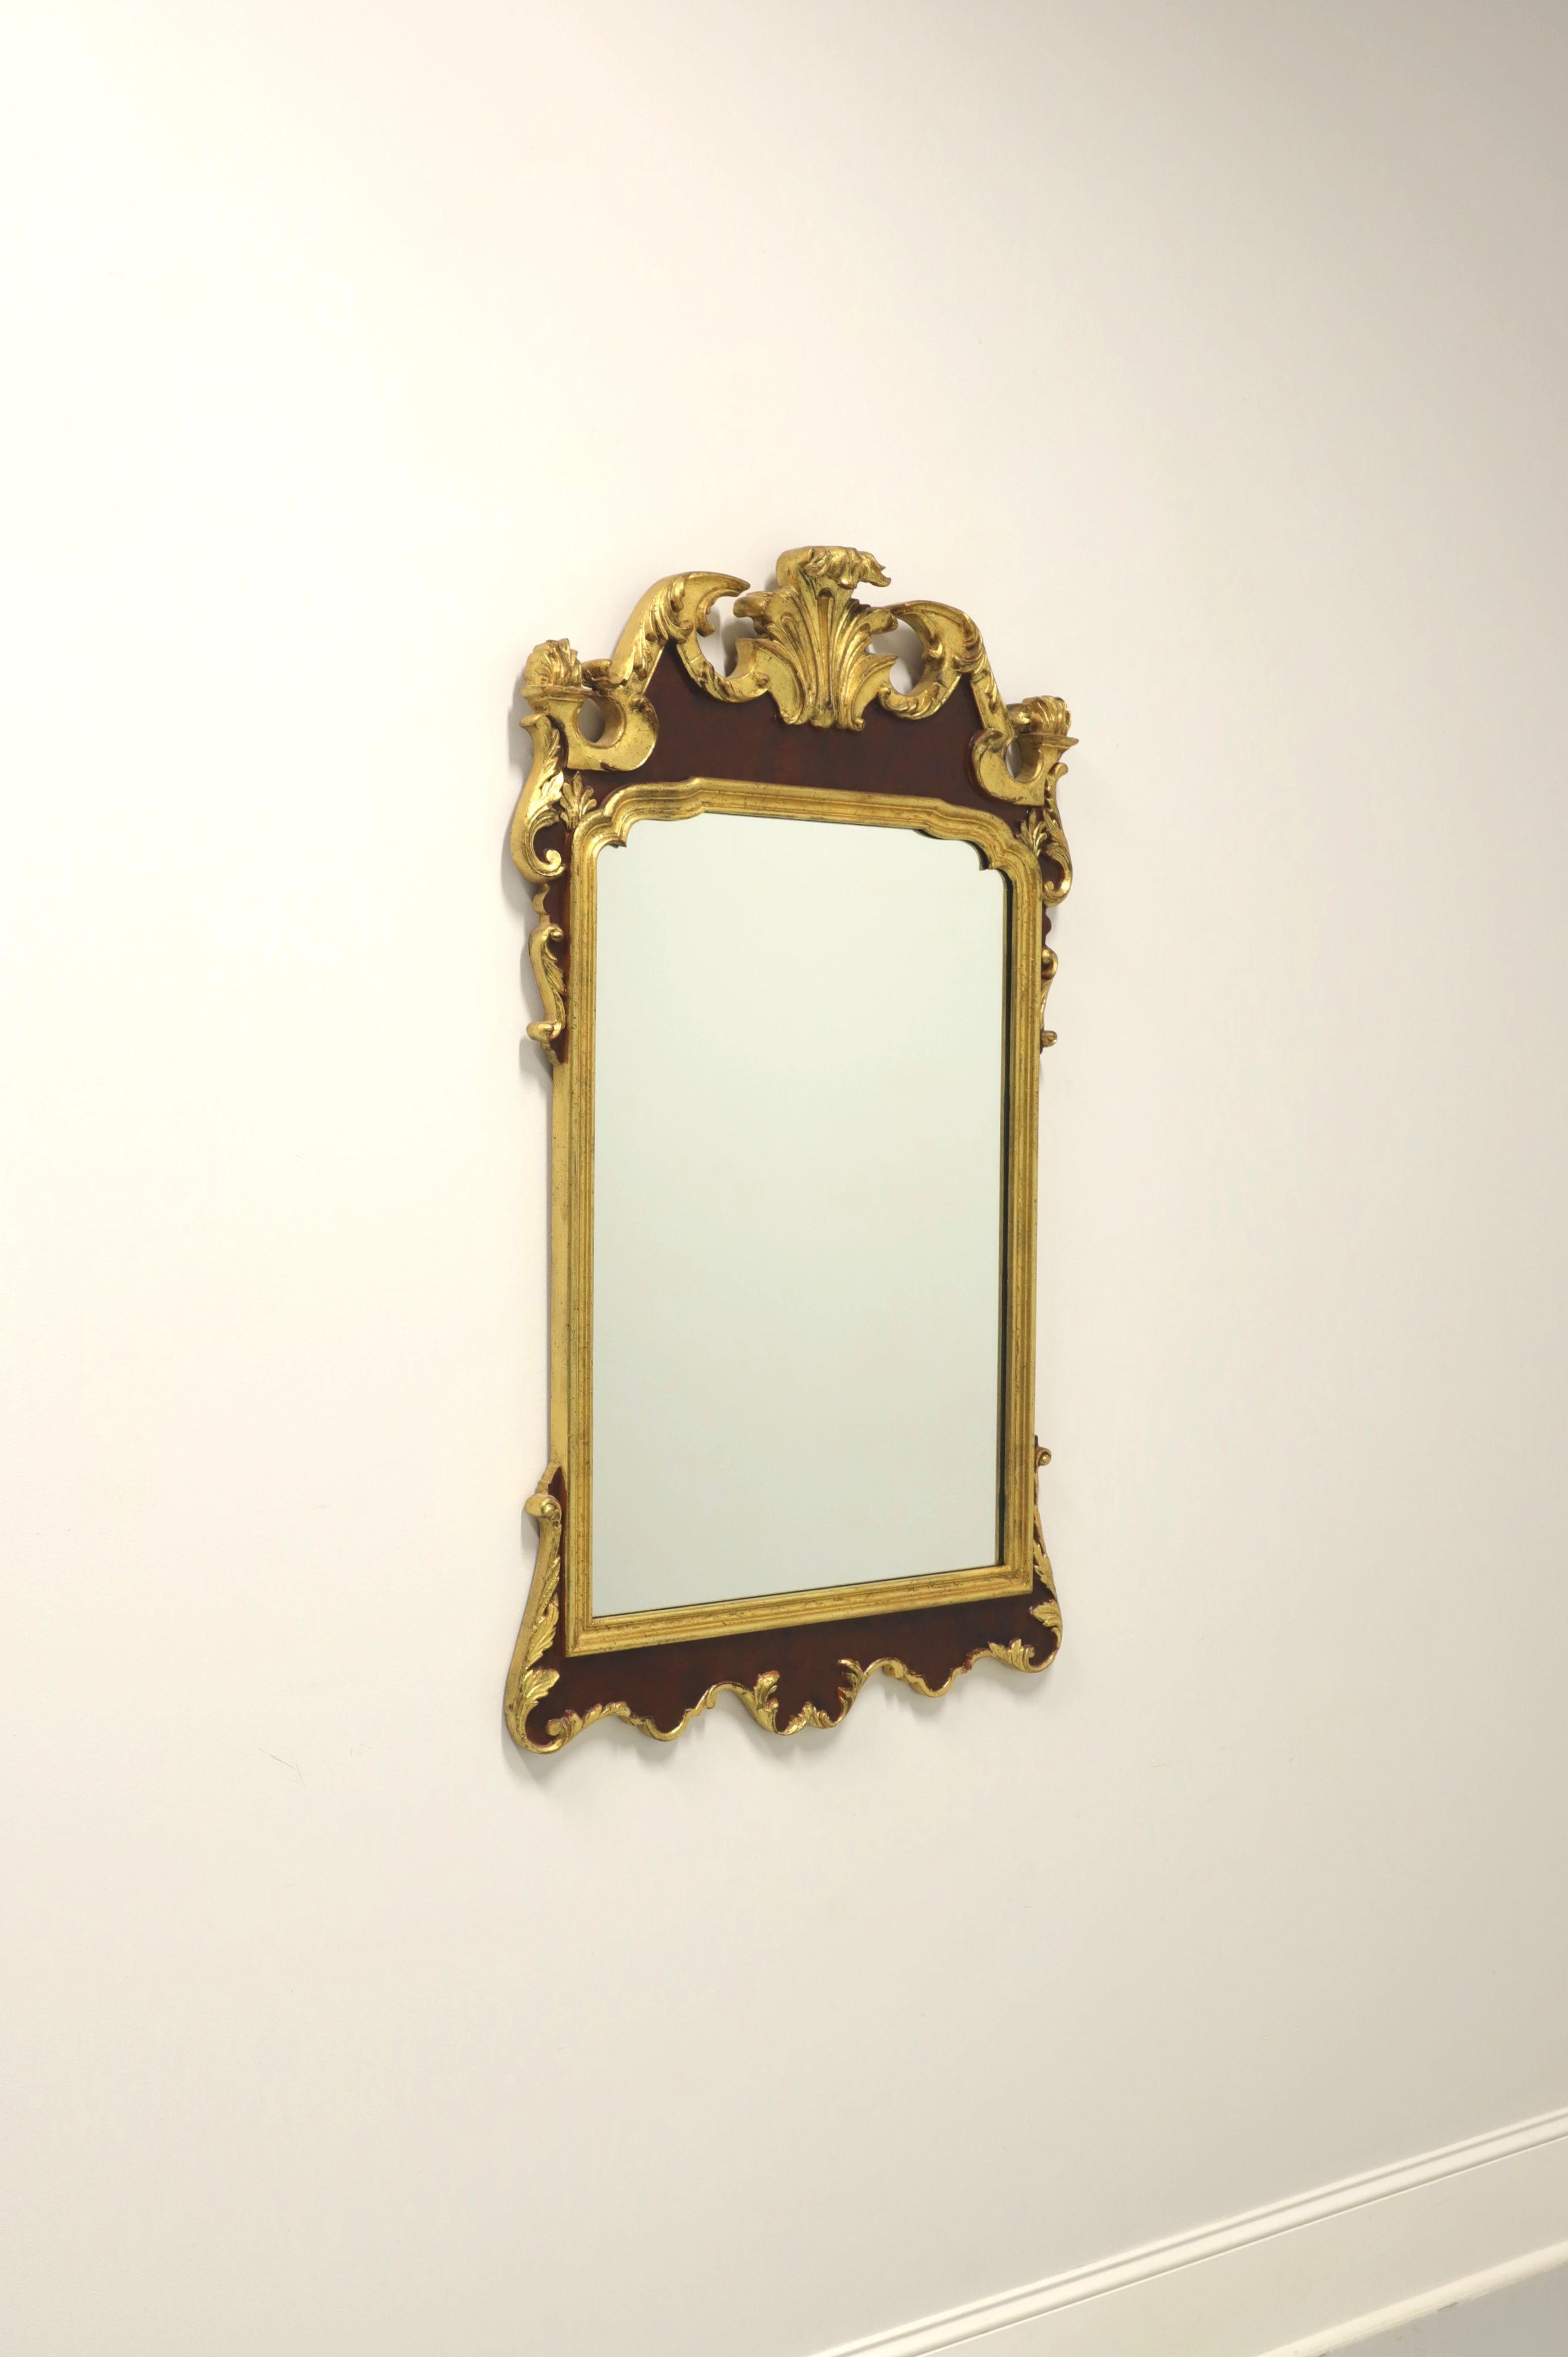 Miroir mural de style provincial français par Labarge. Verre miroir dans un cadre en bois peint en or et marron. La peinture dorée a été légèrement altérée pour donner l'apparence de l'âge. Le cadre est orné d'un motif décoratif sculpté. Fabriqué en